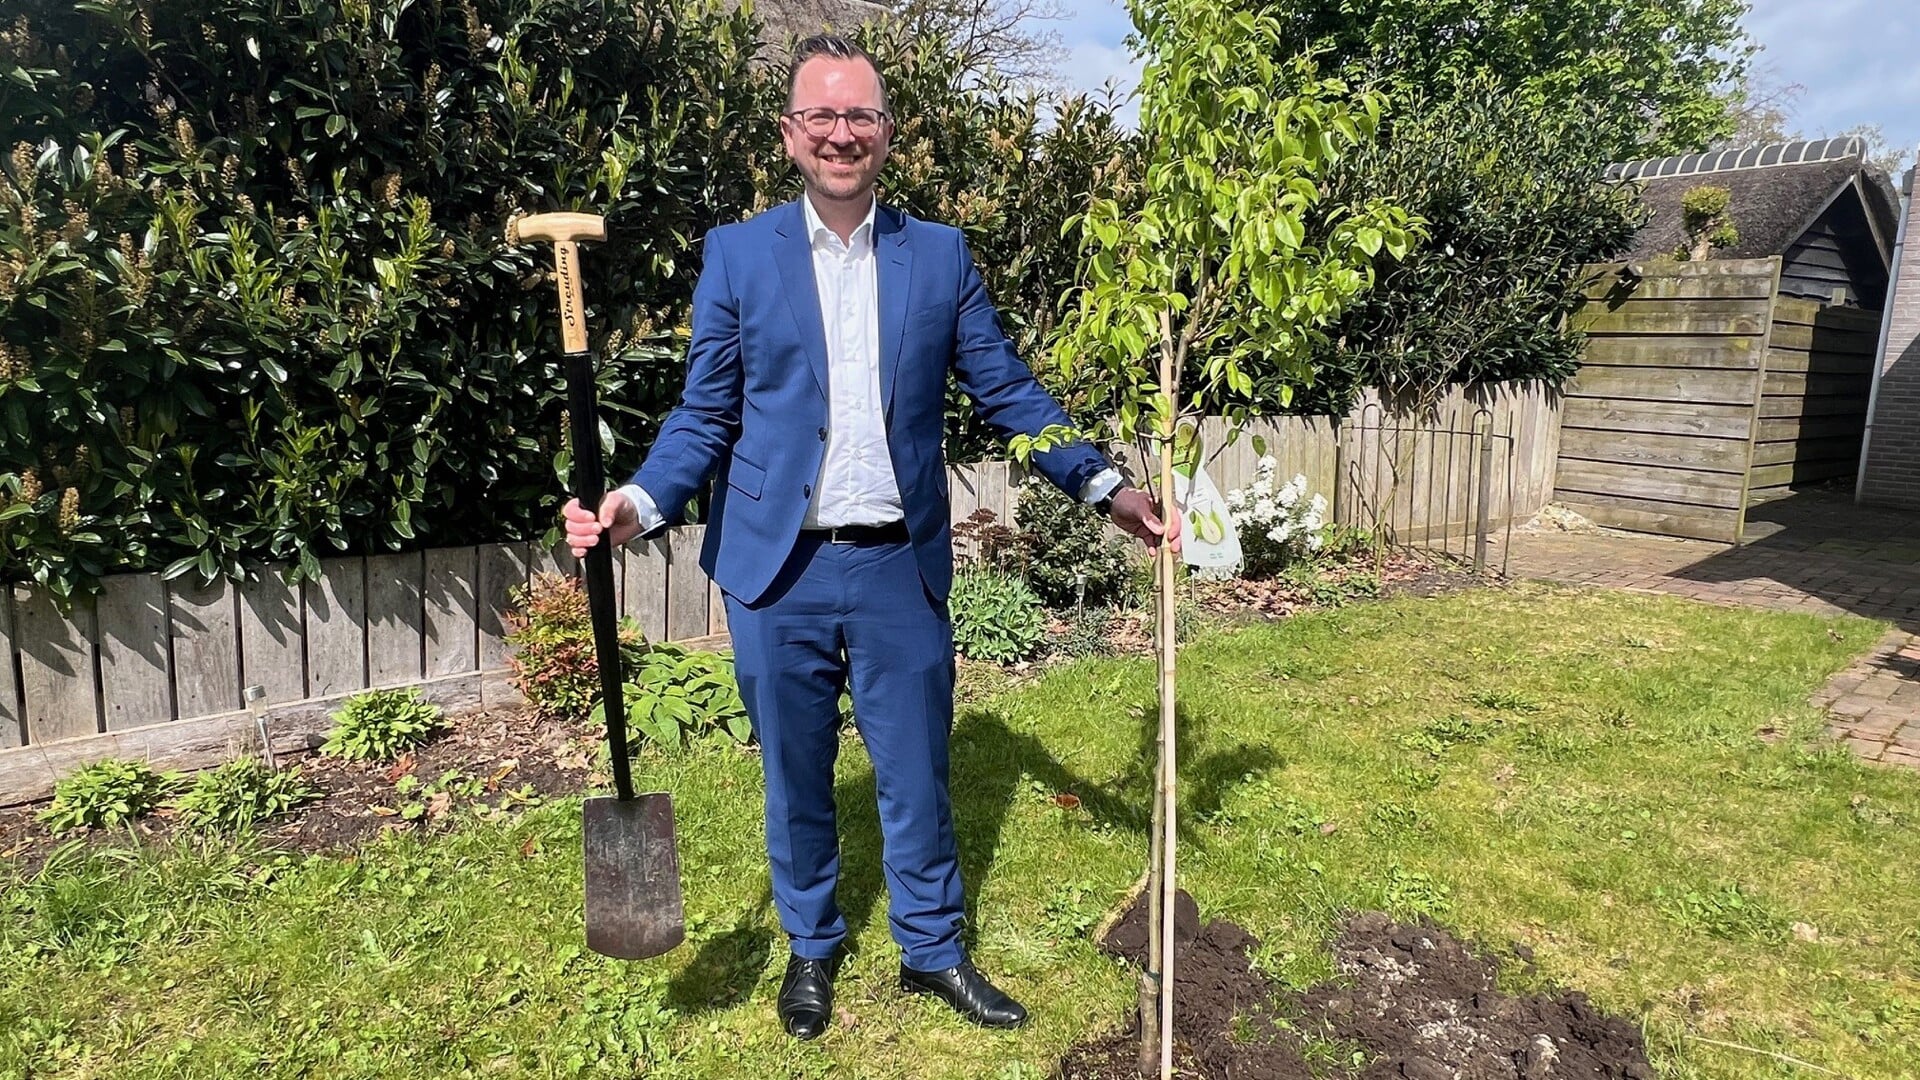 Wethouder Jeroen Hartsuiker plant een perenboom in de tuin van een inwoner van de gemeente. (foto: gemeente Borger-Odoorn)